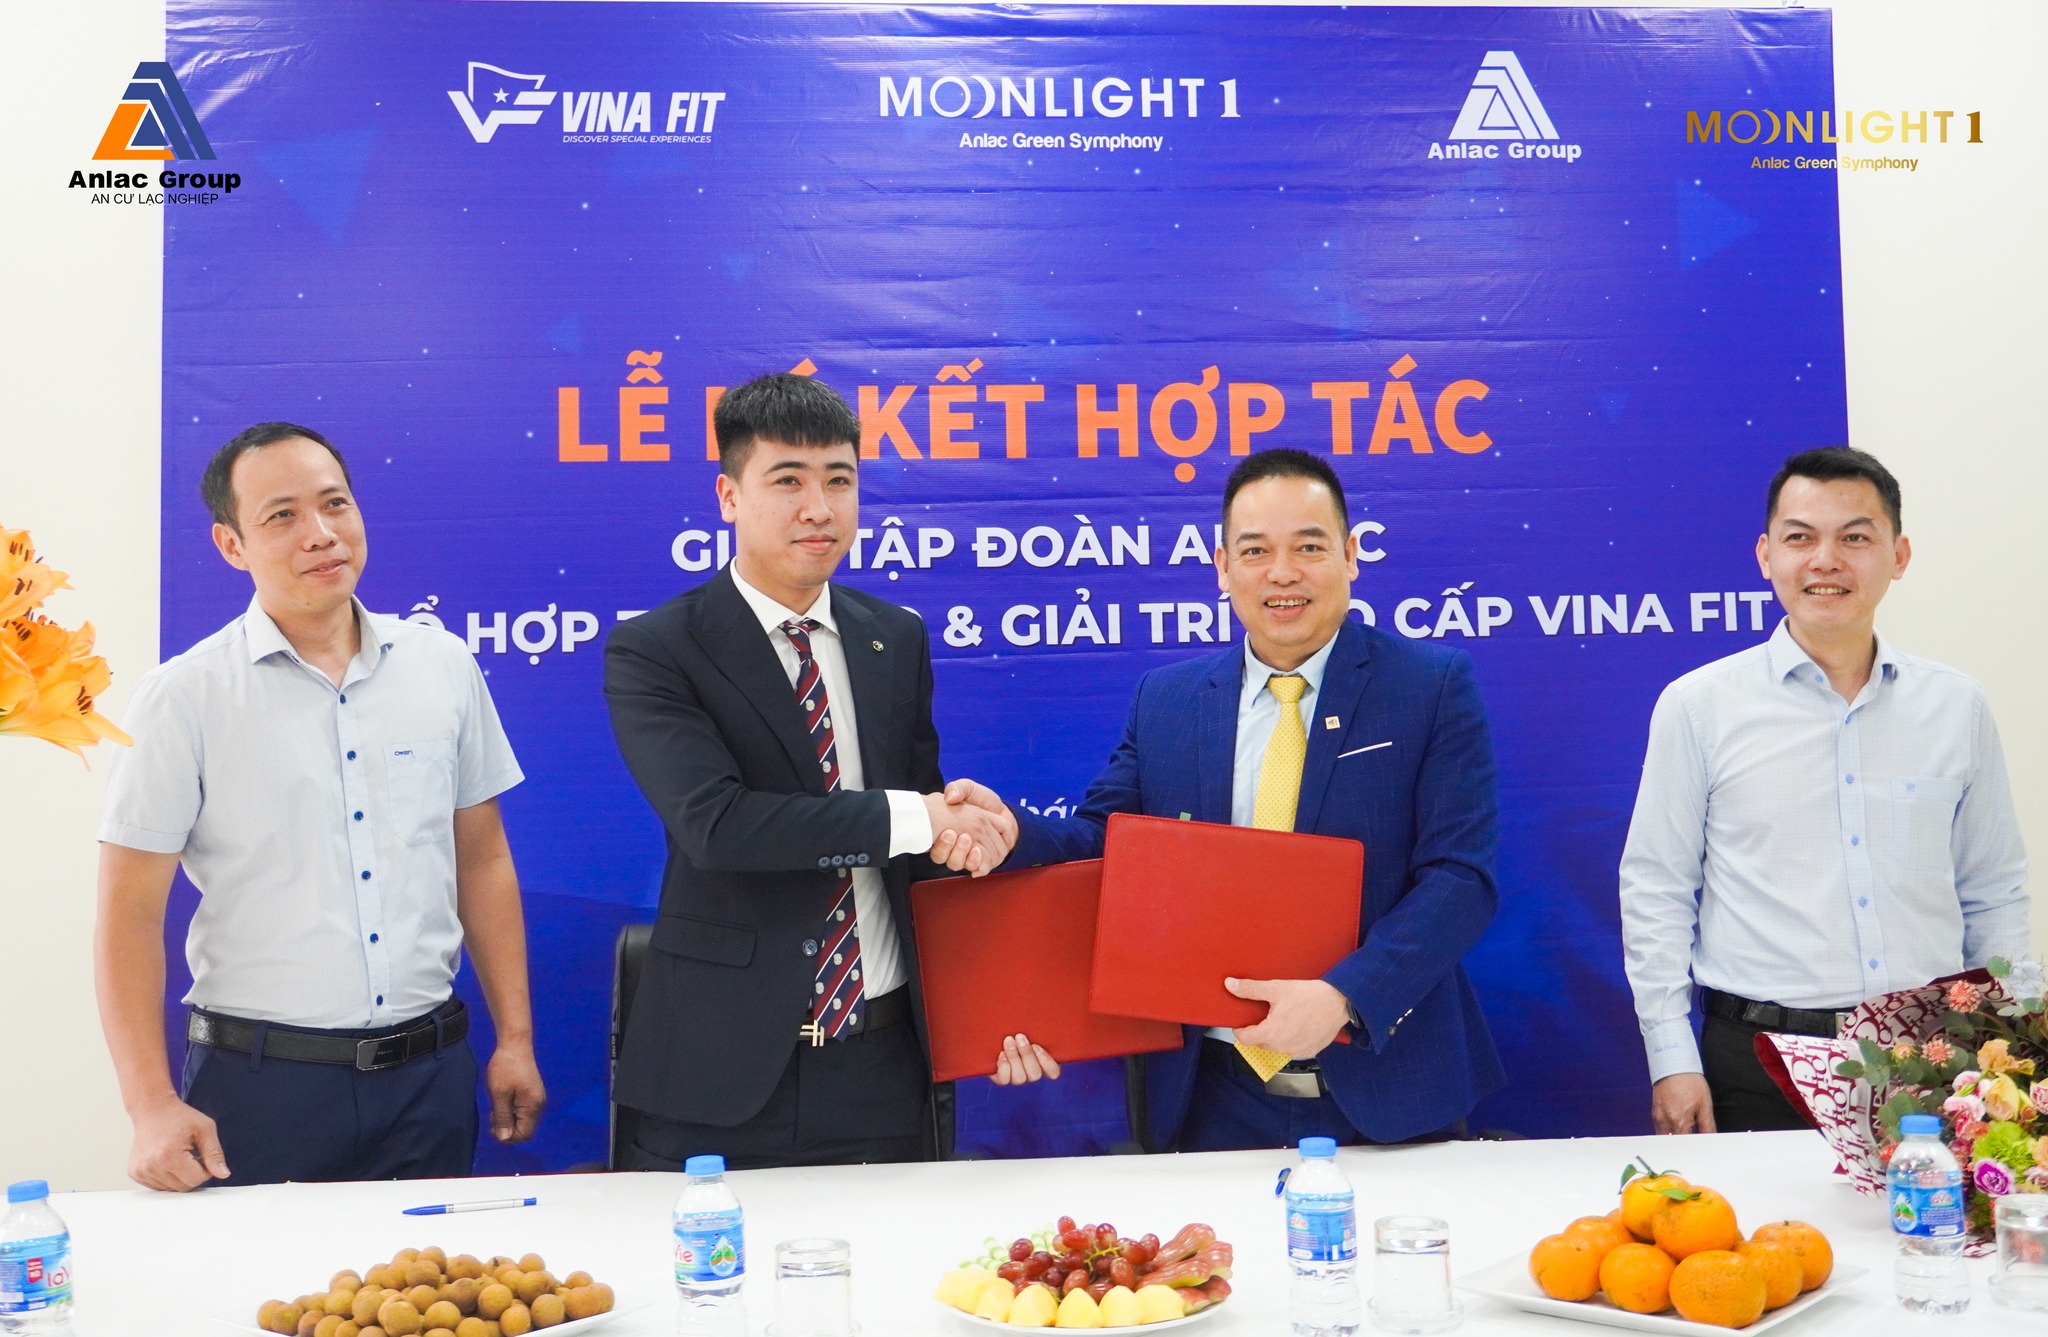 Tập đoàn An Lạc chính thức ký kết hợp tác với Tổ hợp Thể thao & Giải trí cao cấp Vina Fit tại Moonlight 1